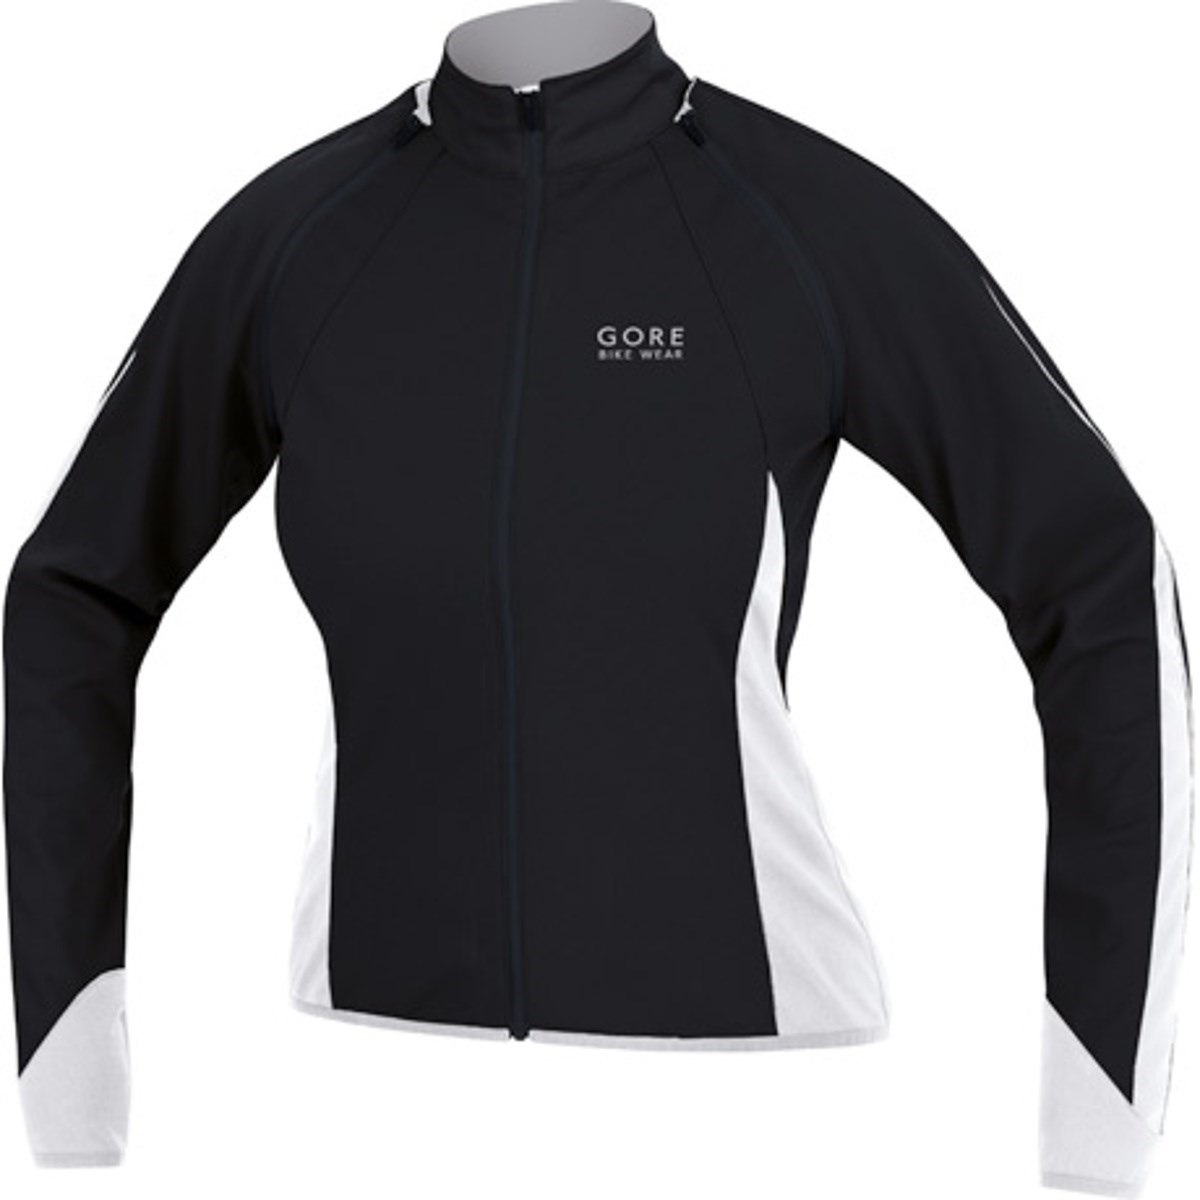 Gore Phantom III Womens Windproof Cycling Jacket product image